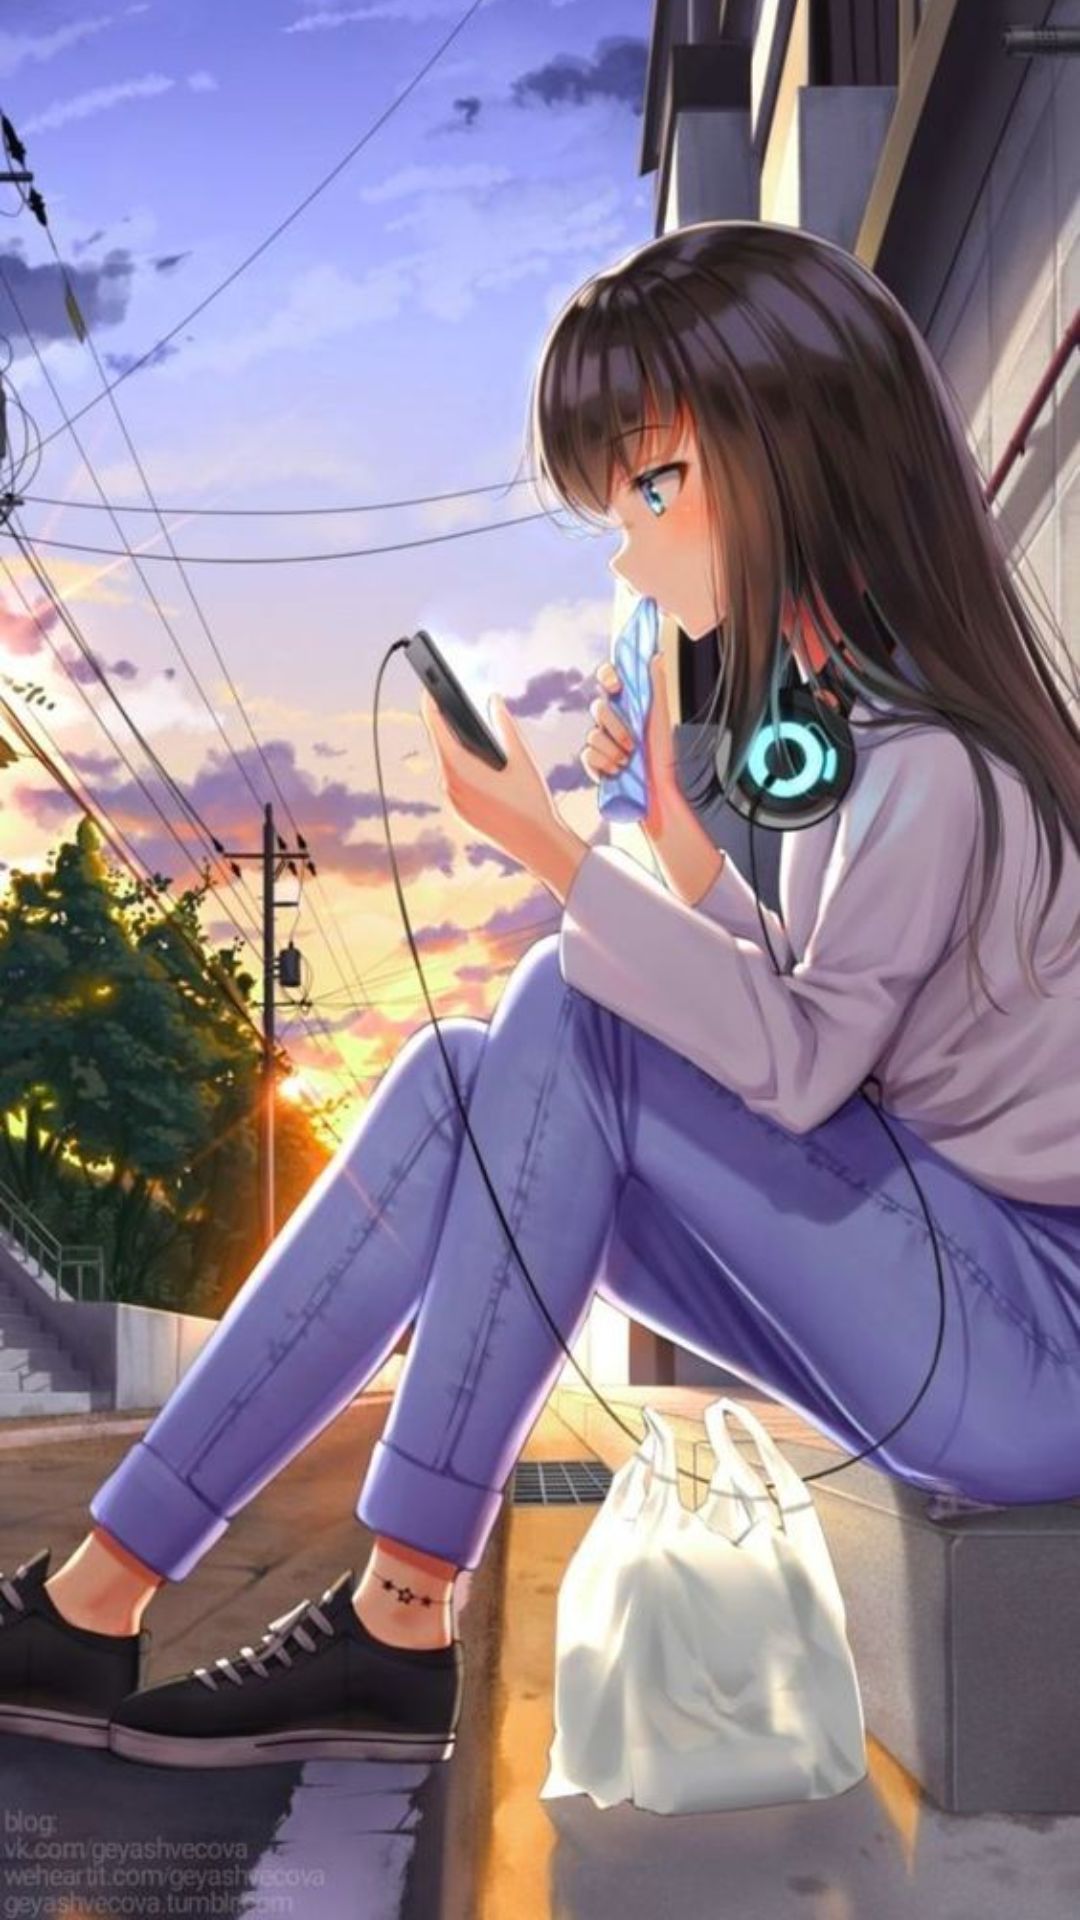 Anime Girl Wallpaper Best Quality Anime Girl Background (HD, 4k)